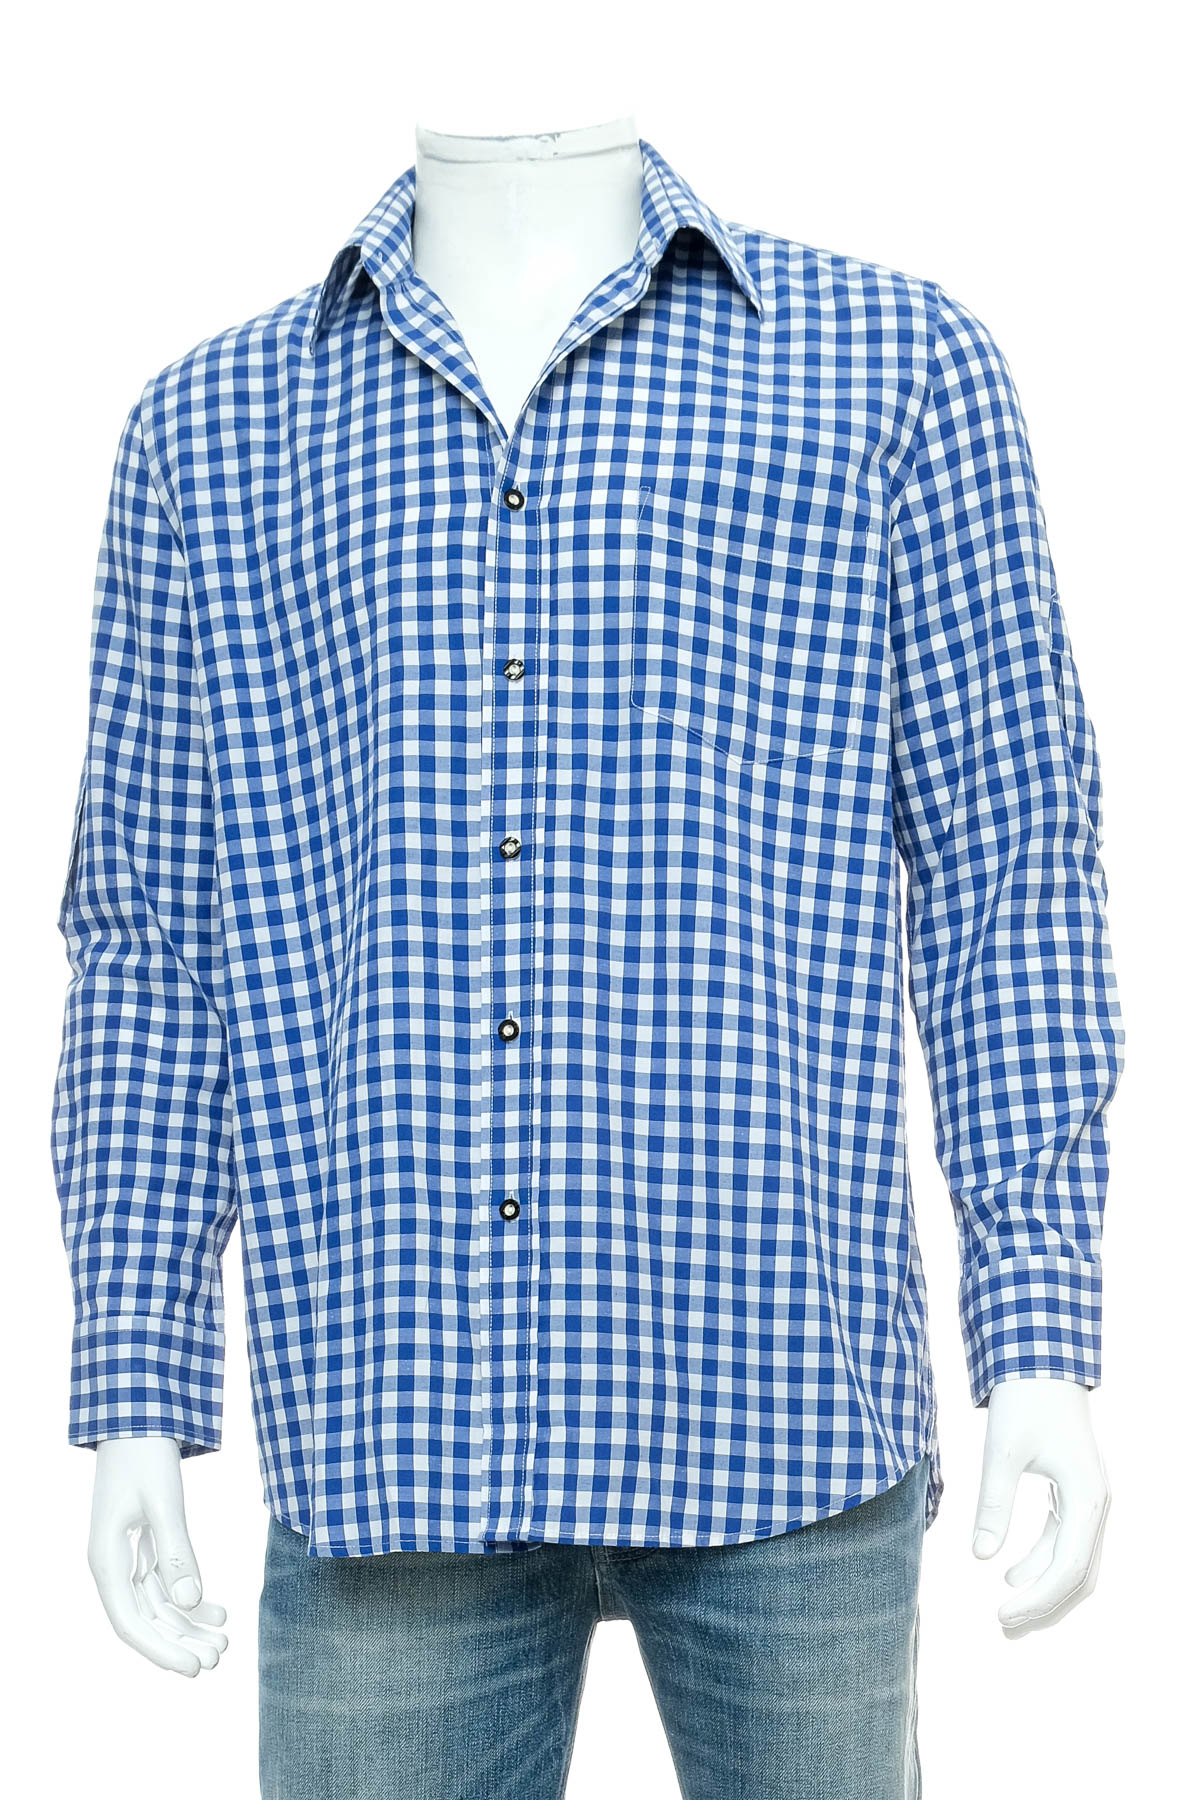 Ανδρικό πουκάμισο - Fuchs Trachtenmoden - 0